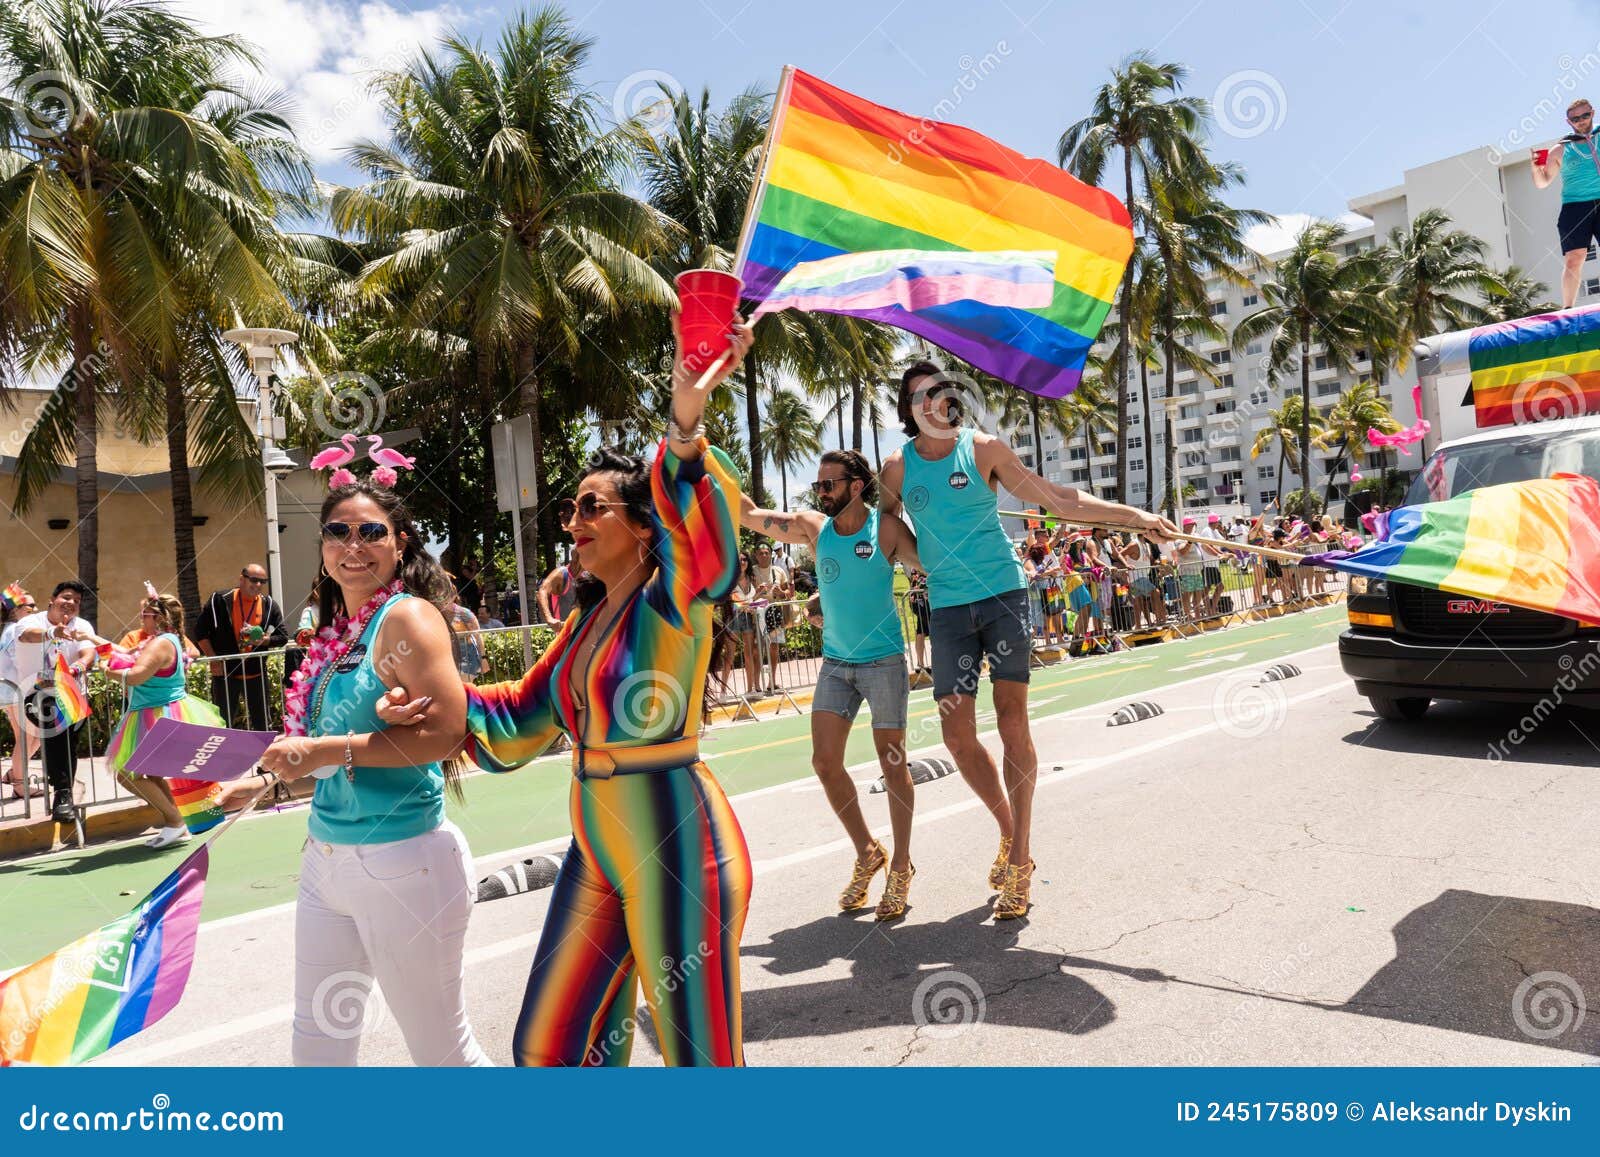 Annual Pride Festival and Parade in Miami South Beach Editorial Stock